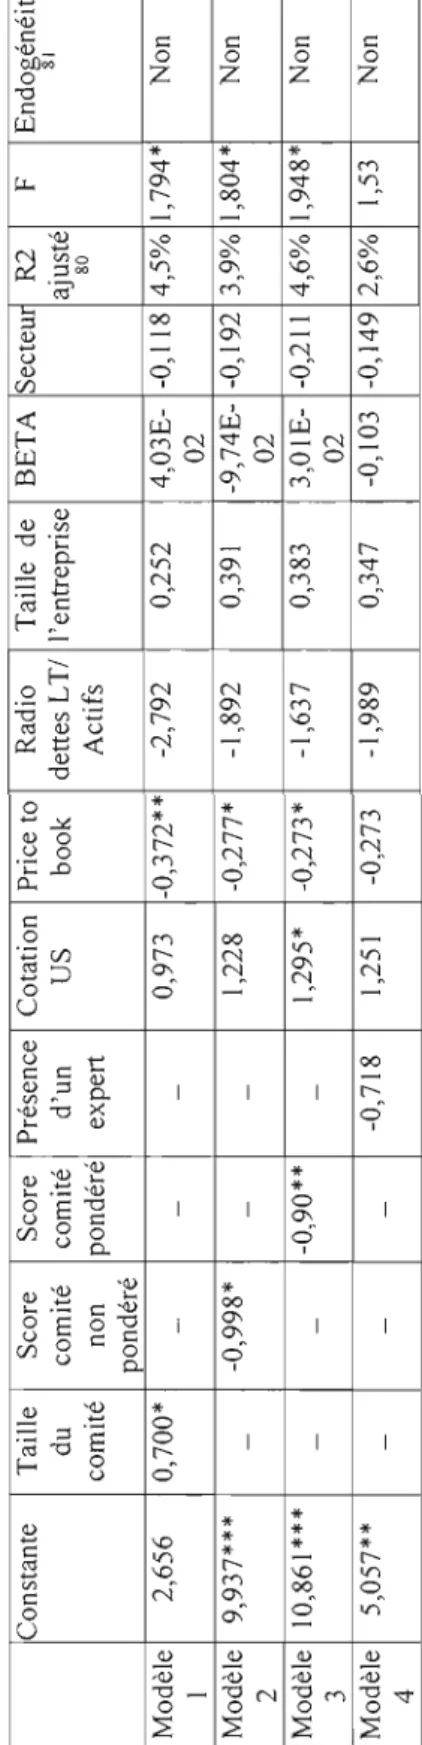 Tableau  4.18 Résultats relatifs aux caractéristiques du comité de vérification avec moindre carrée ordinaire (MCOf9  Constante Taille Score Score Présence Cotation Price to Radio Taille de BETA SecteUi R2 F  du comité comité d'un US book dettes LT/ l'entr